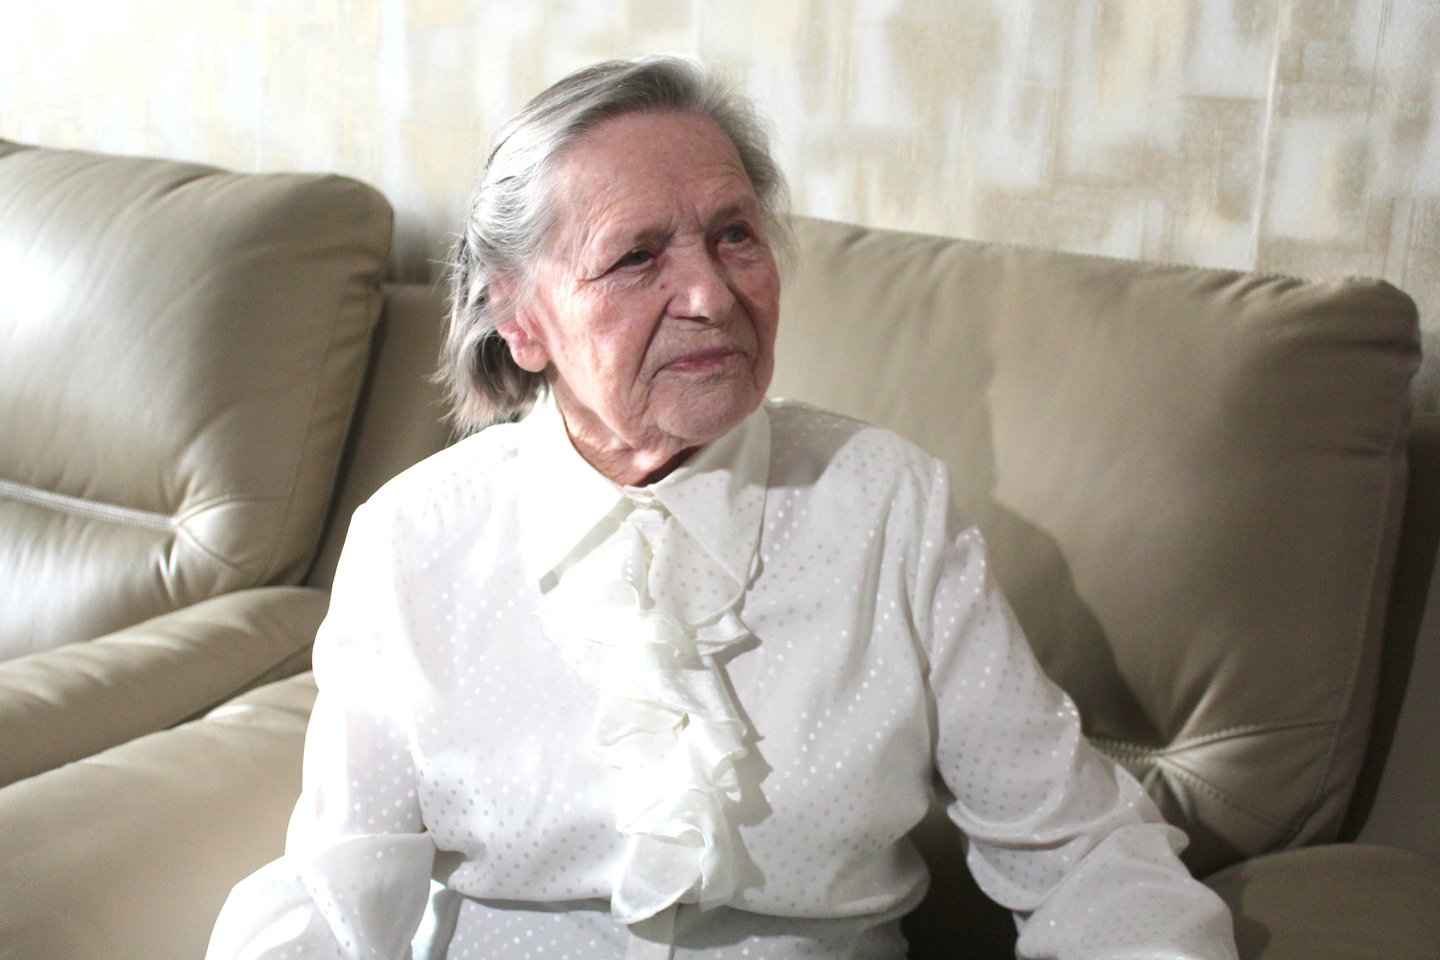  Šimto metų jubiliejų švenčianti S.Jankauskienė sveikata nesiskundžia ir prasmingai leidžia laiką.<br> R.Vitkaus nuotr.